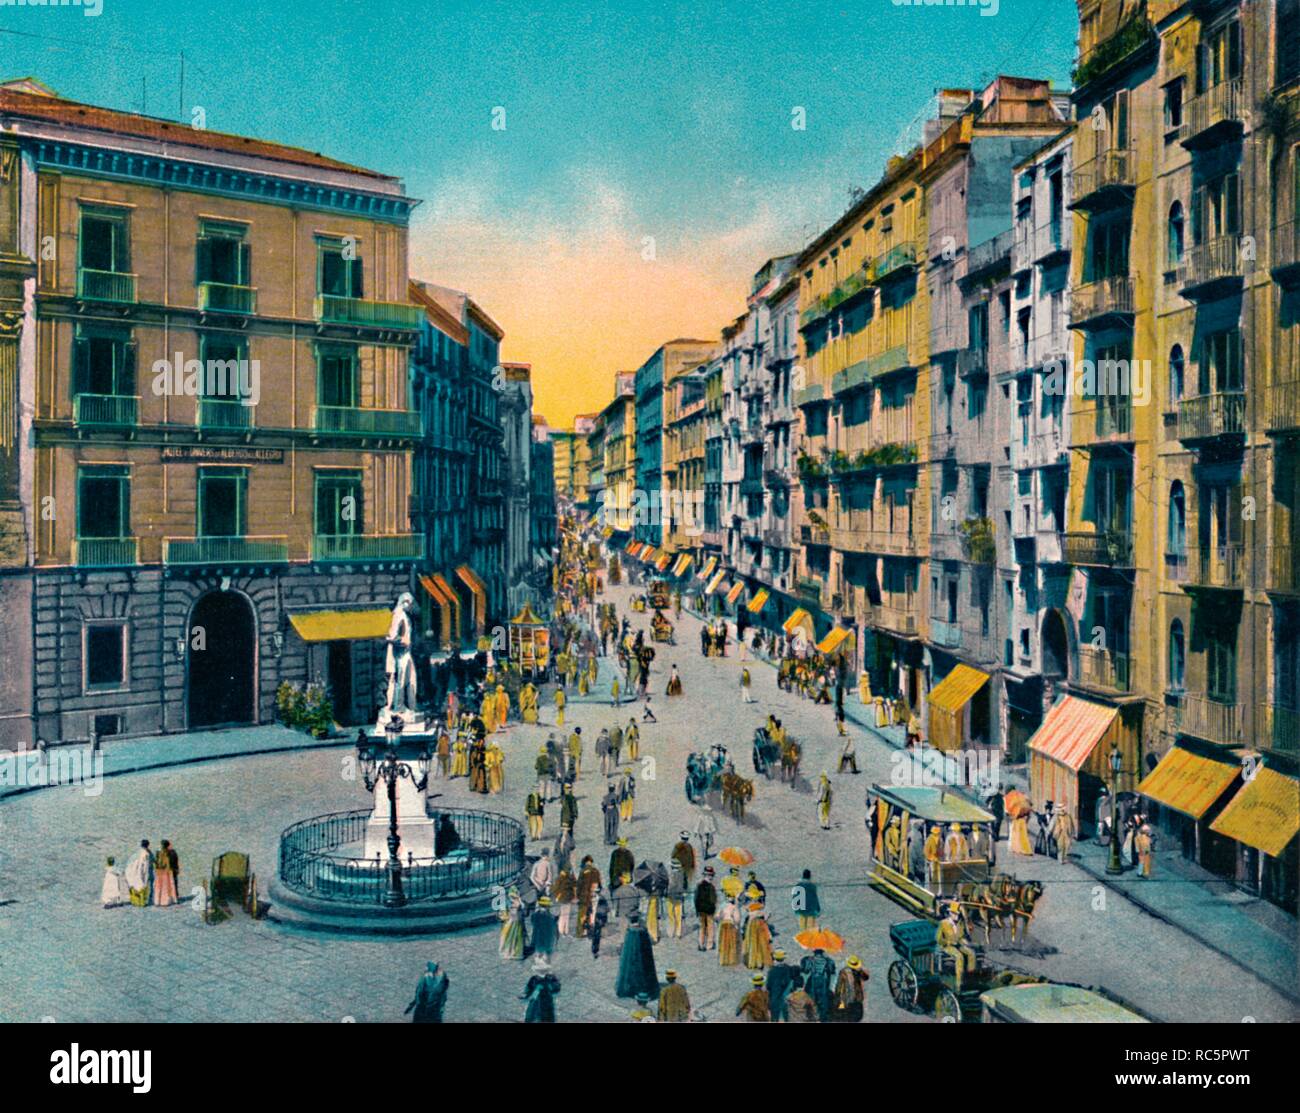 'Napoli - Via Roma, Largo Carita Con Monumento A Carlo Poerio', c1900. Creator: Unknown. Stock Photo